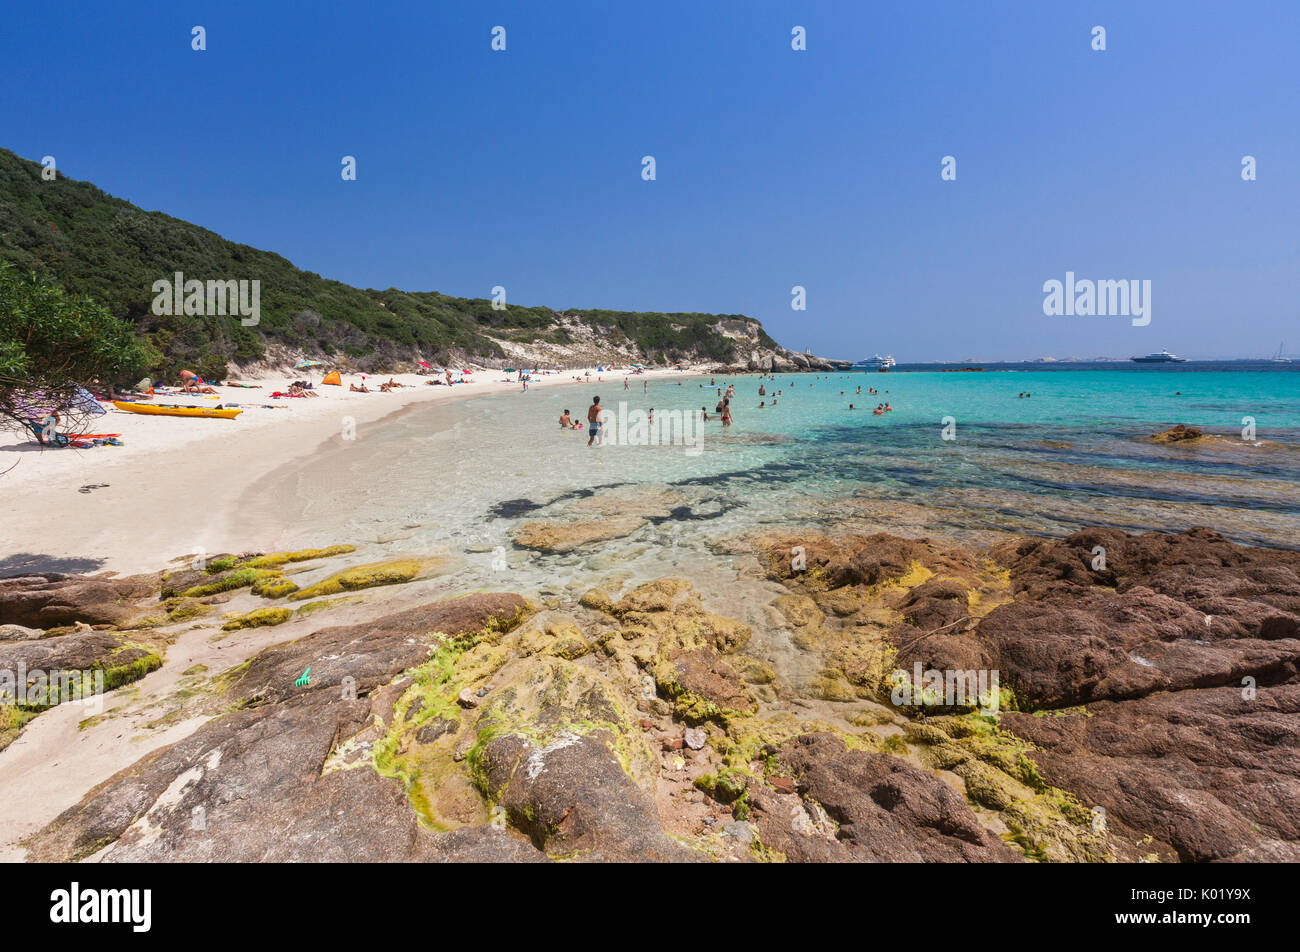 Baigneurs dans la mer claire entourée par le promontoire enrichi par de la végétation verte Sperone Bonifacio Corse du Sud France Europe Banque D'Images